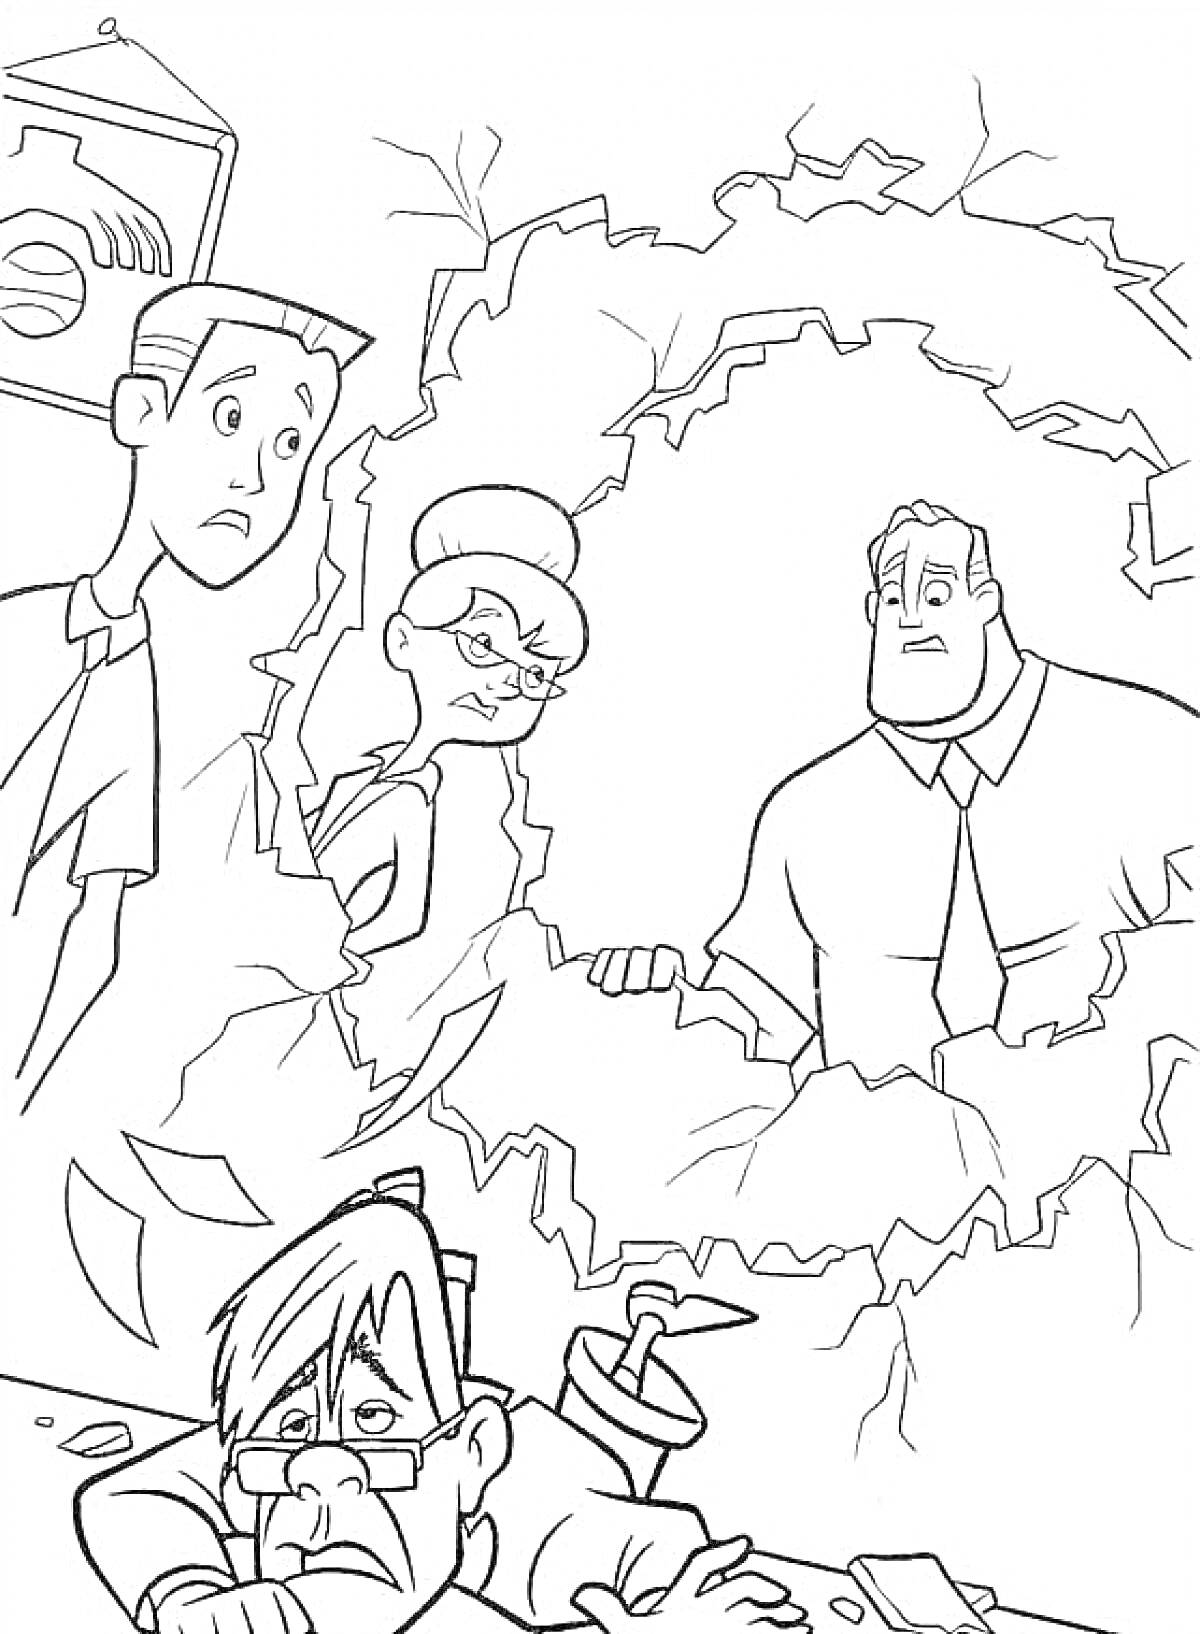 Раскраска Деловой человек в очках за столом и трое супергероев сзади через стену